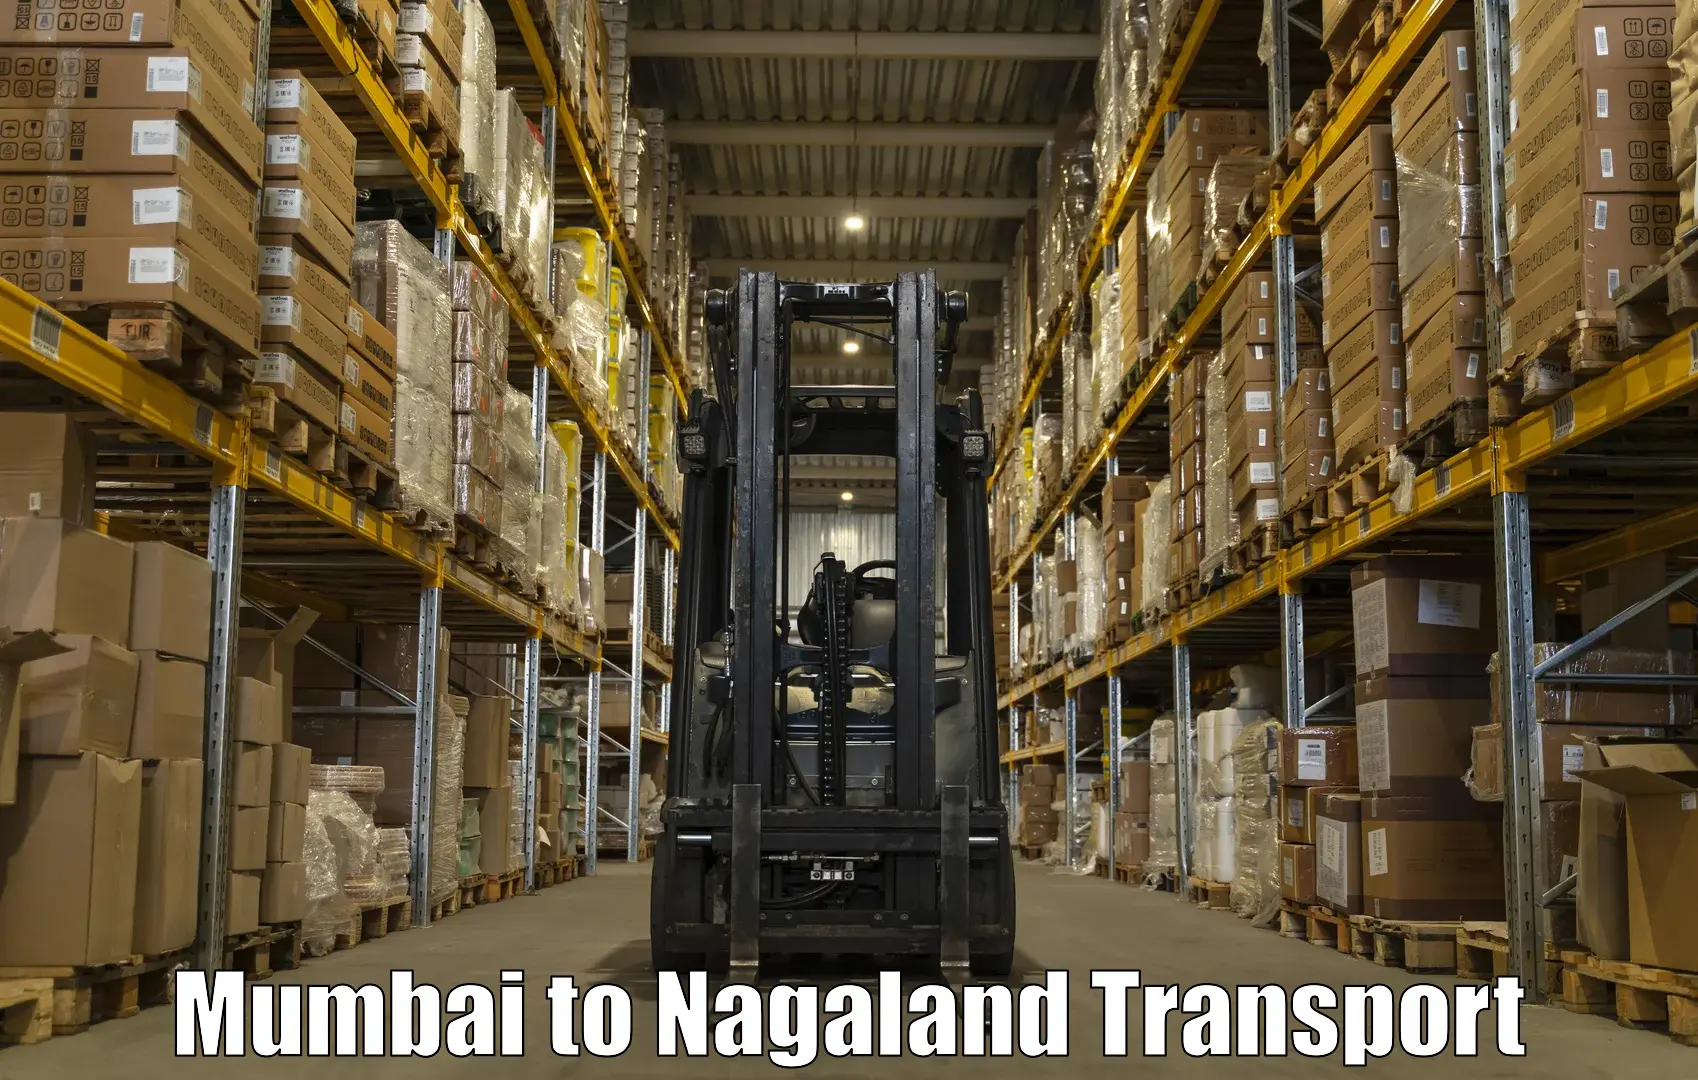 Luggage transport services Mumbai to Dimapur